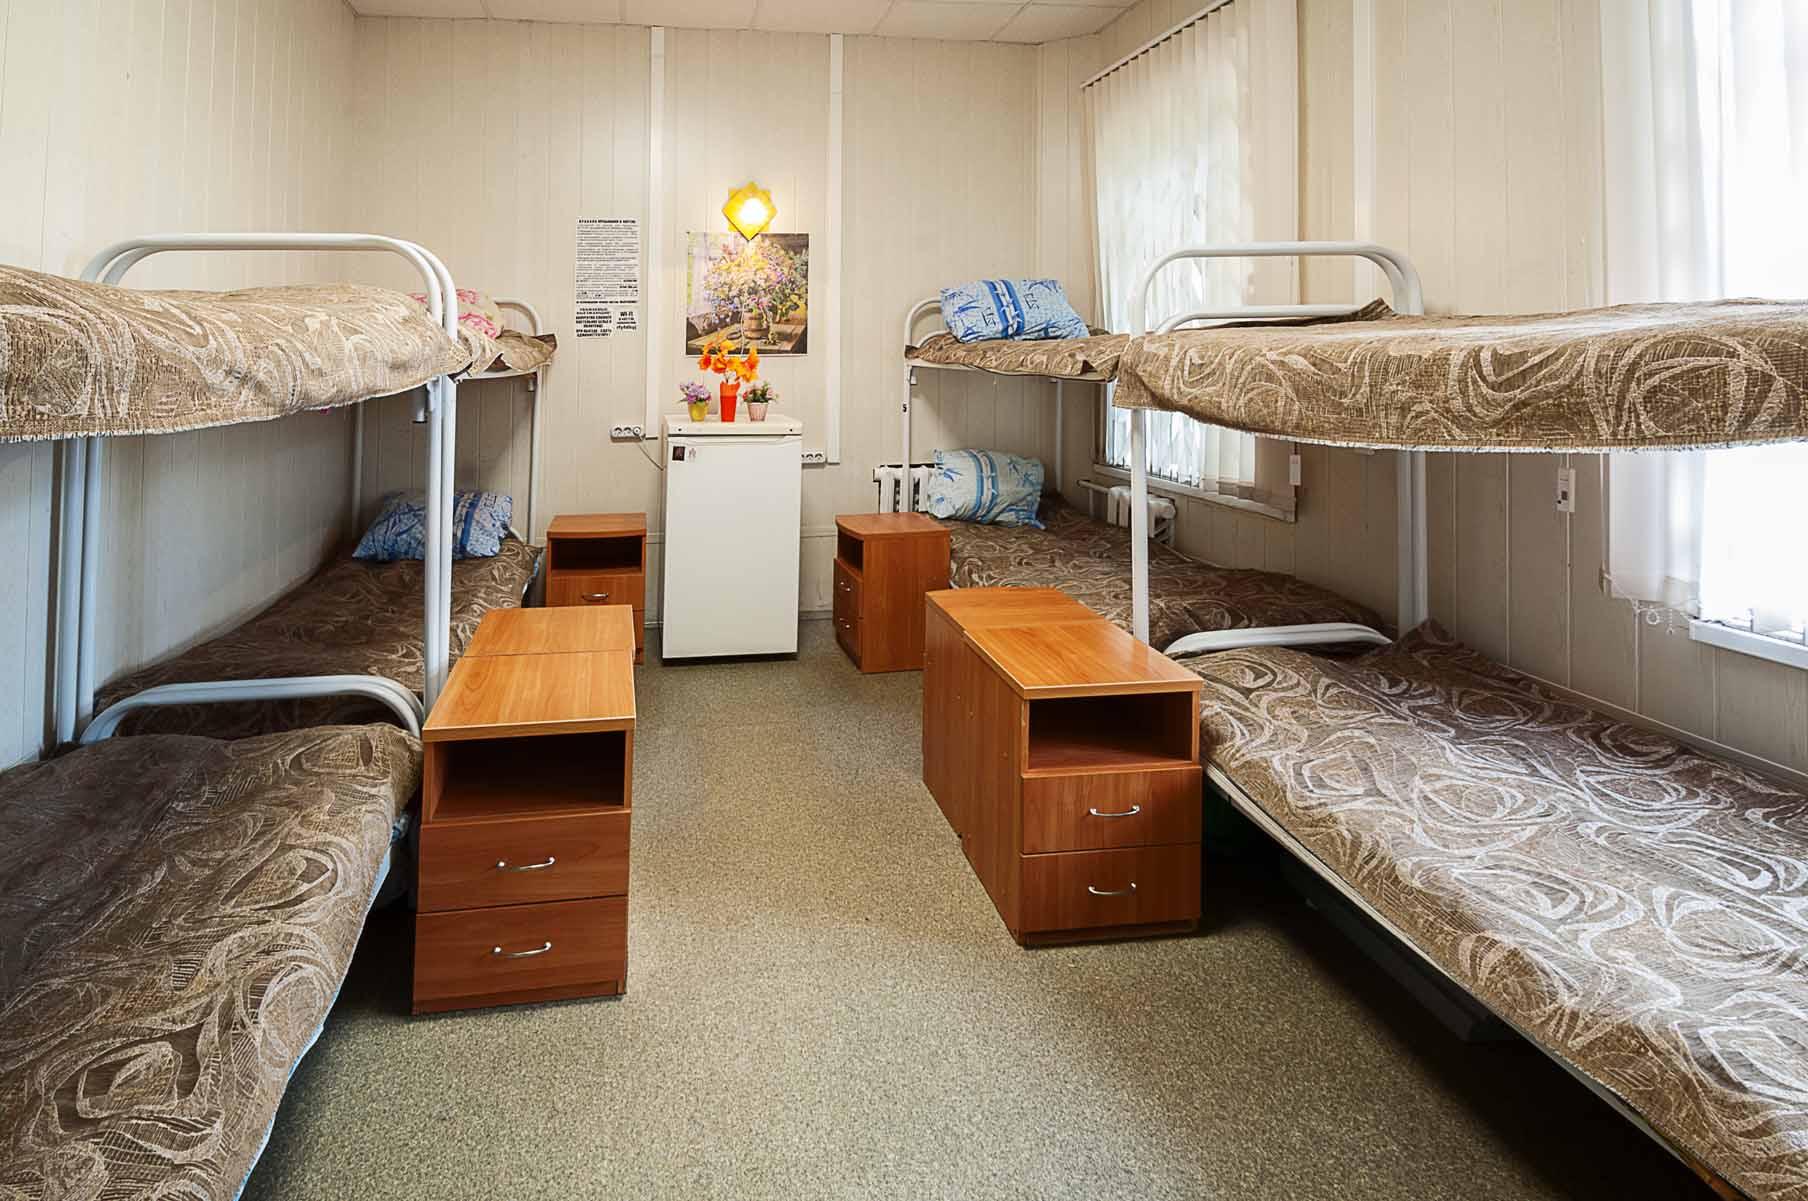 Койко место в хостеле или общежитии — что выбрать?